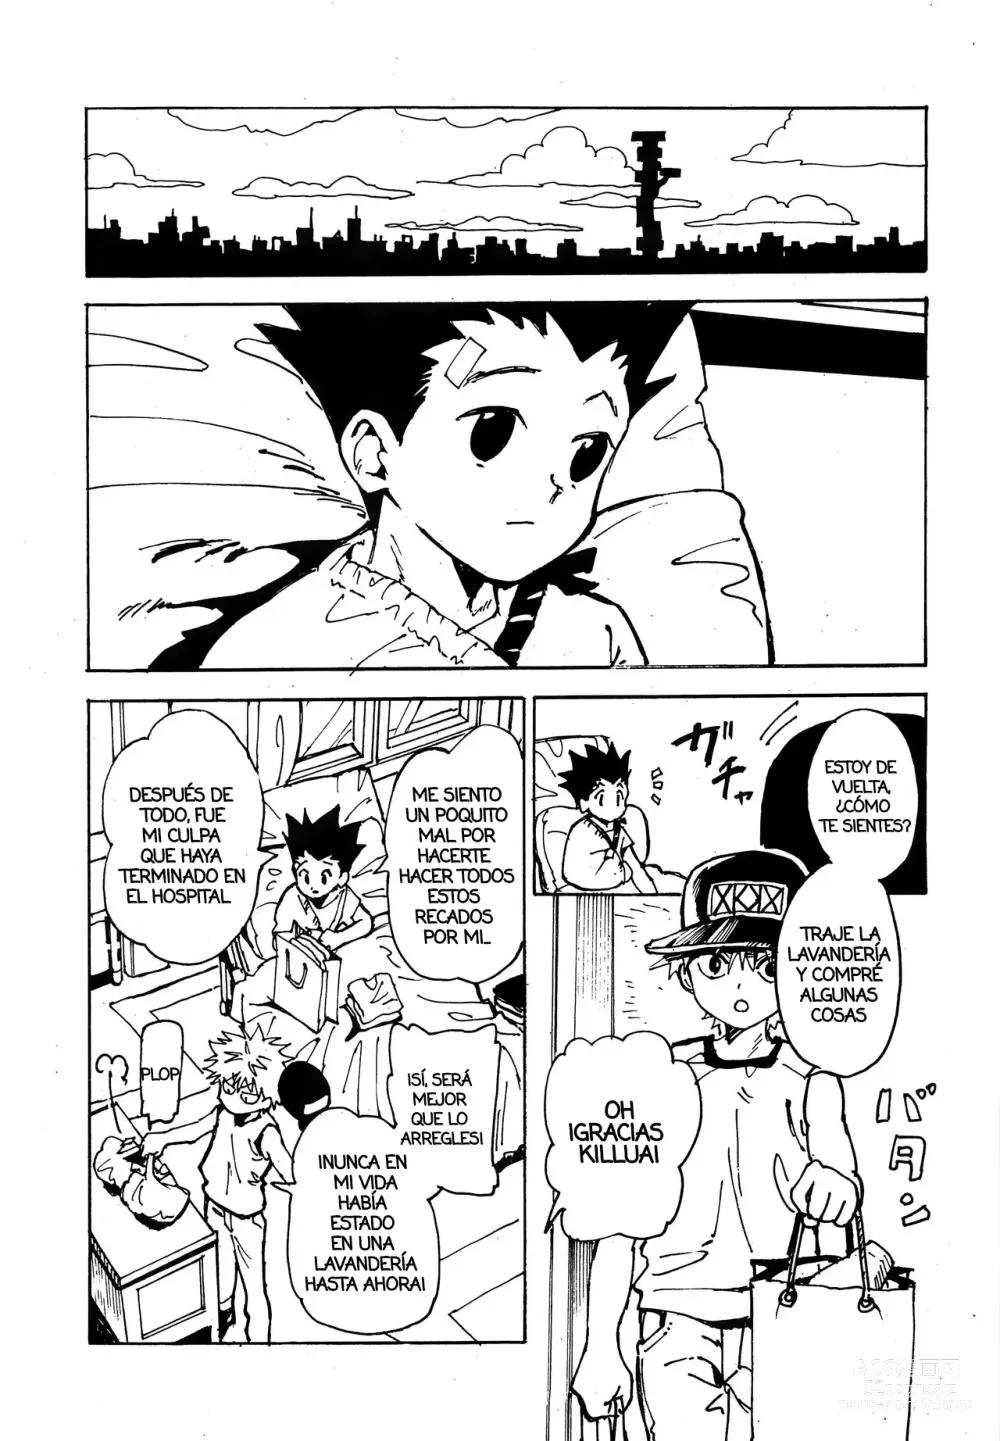 Page 4 of doujinshi Imprudencia Juvenil